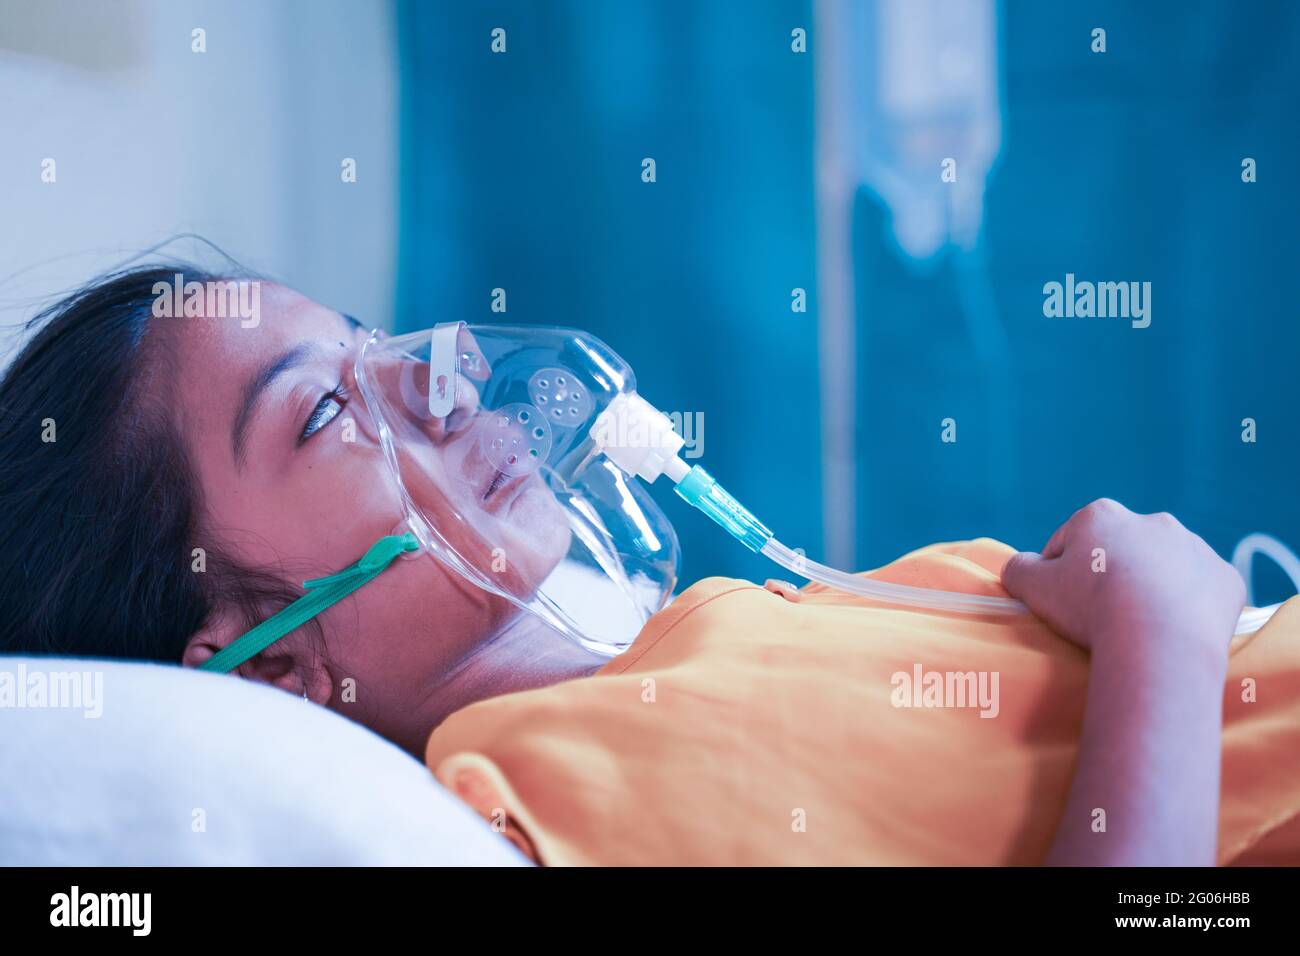 Vue latérale de la petite fille qui respire sur le masque d'oxygène du ventilateur en raison du coronavirus Covid-19 essoufflement ou dyspnée - concept d'enfants soins de santé Banque D'Images